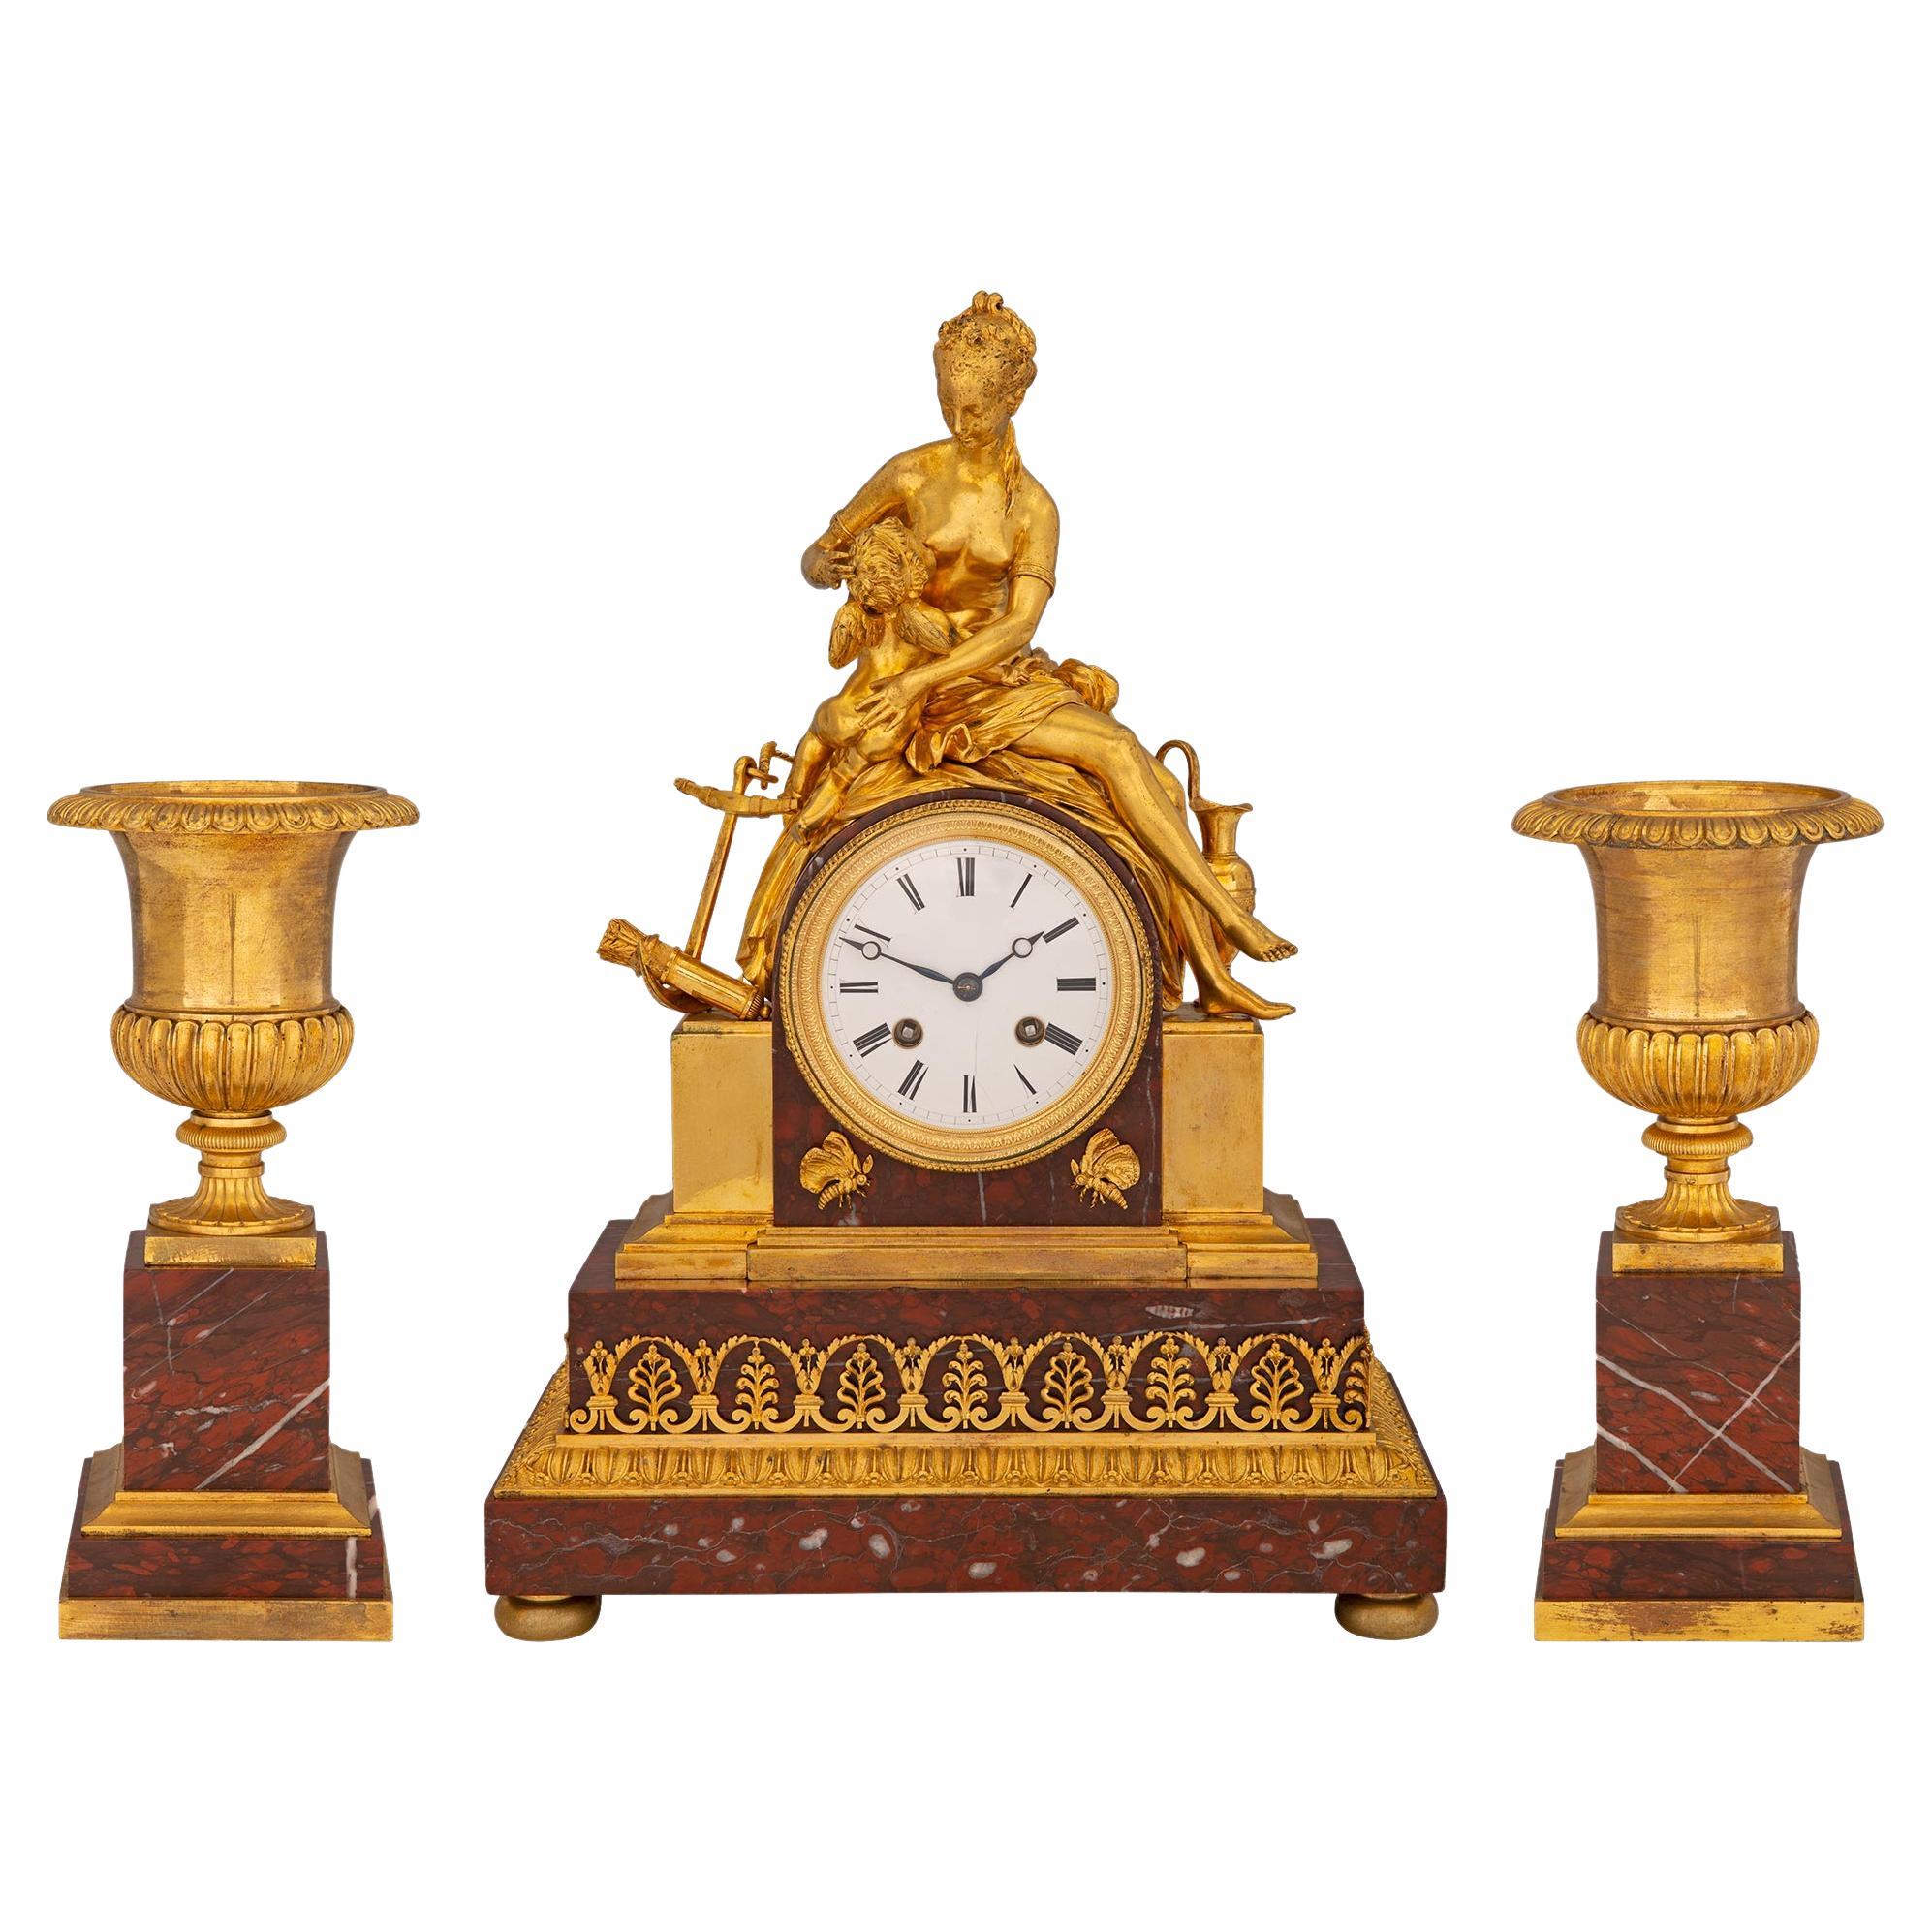 Garniture de style néoclassique français du 19ème siècle en bronze doré et marbre